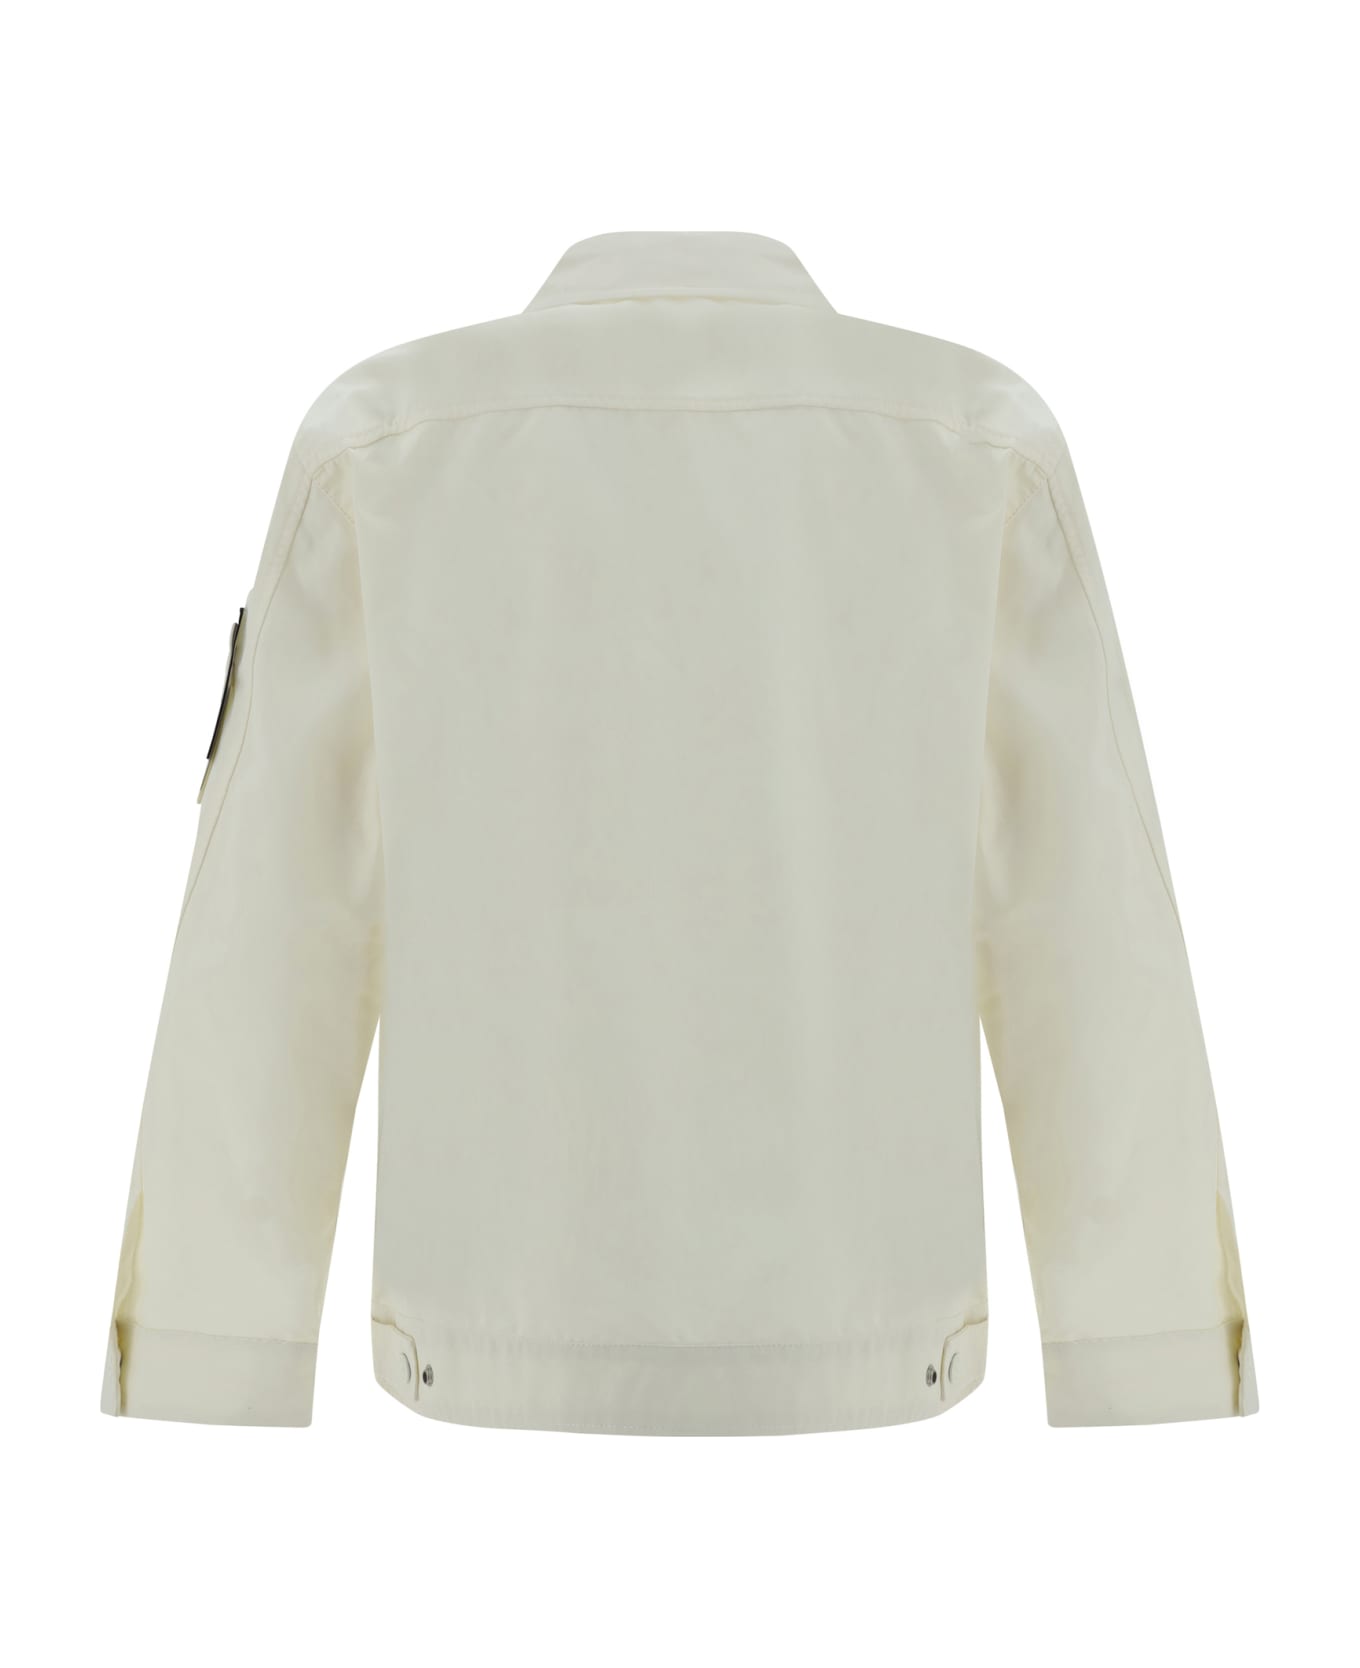 Stone Island Zippered Cotton Jacket - Ivory ジャケット